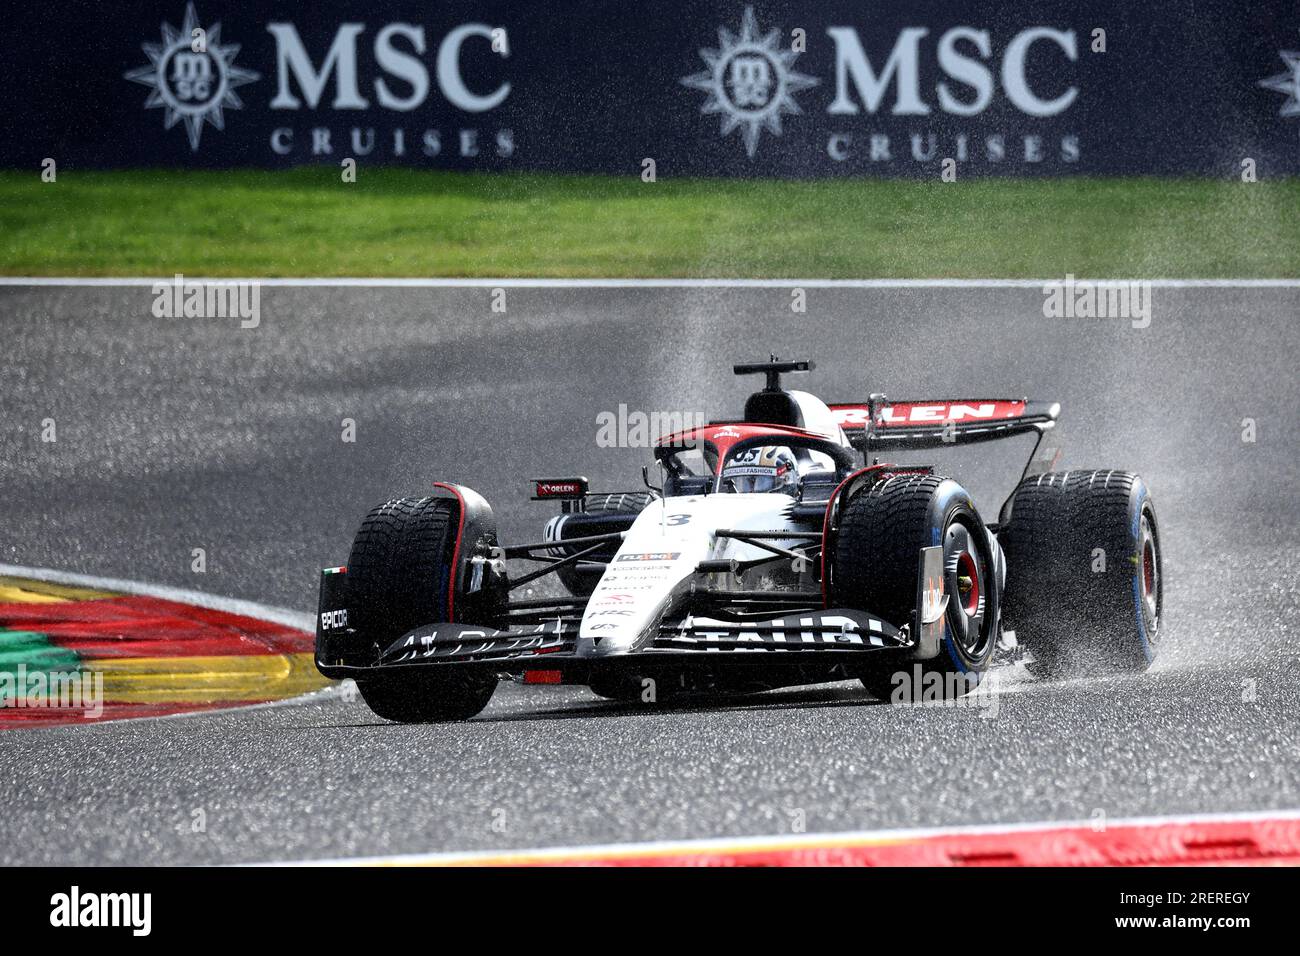 Jolyon Palmer is ready for Formula 1 race debut - Pastor Maldonado